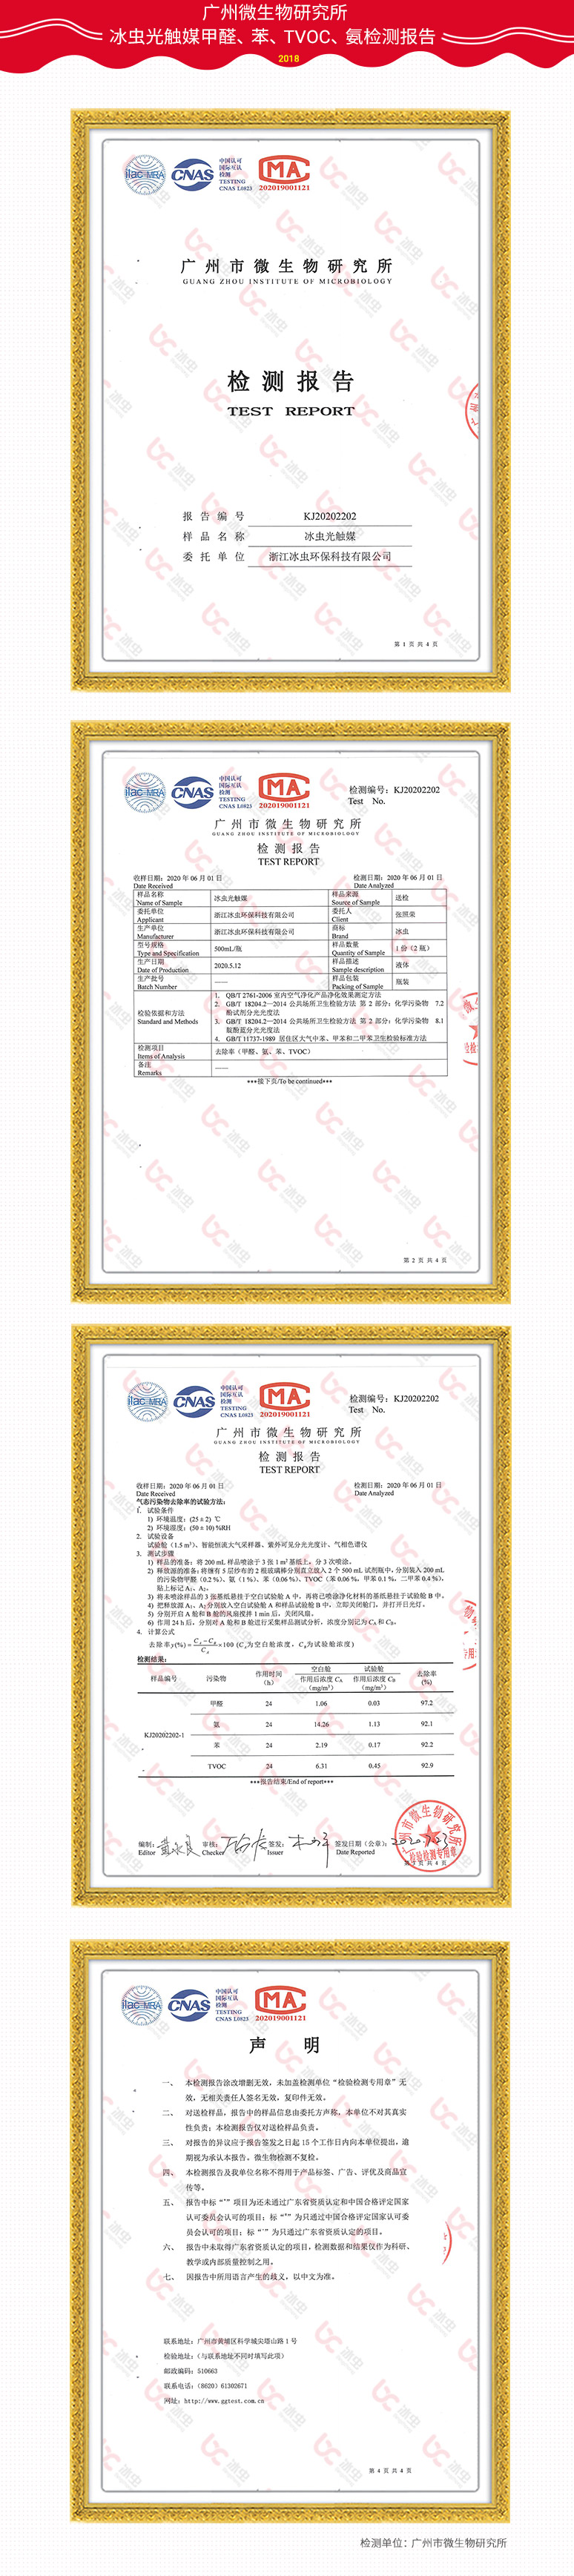 广州市微生物研究所—冰虫光触媒甲醛、苯、TVOC、氨去除率检测报告